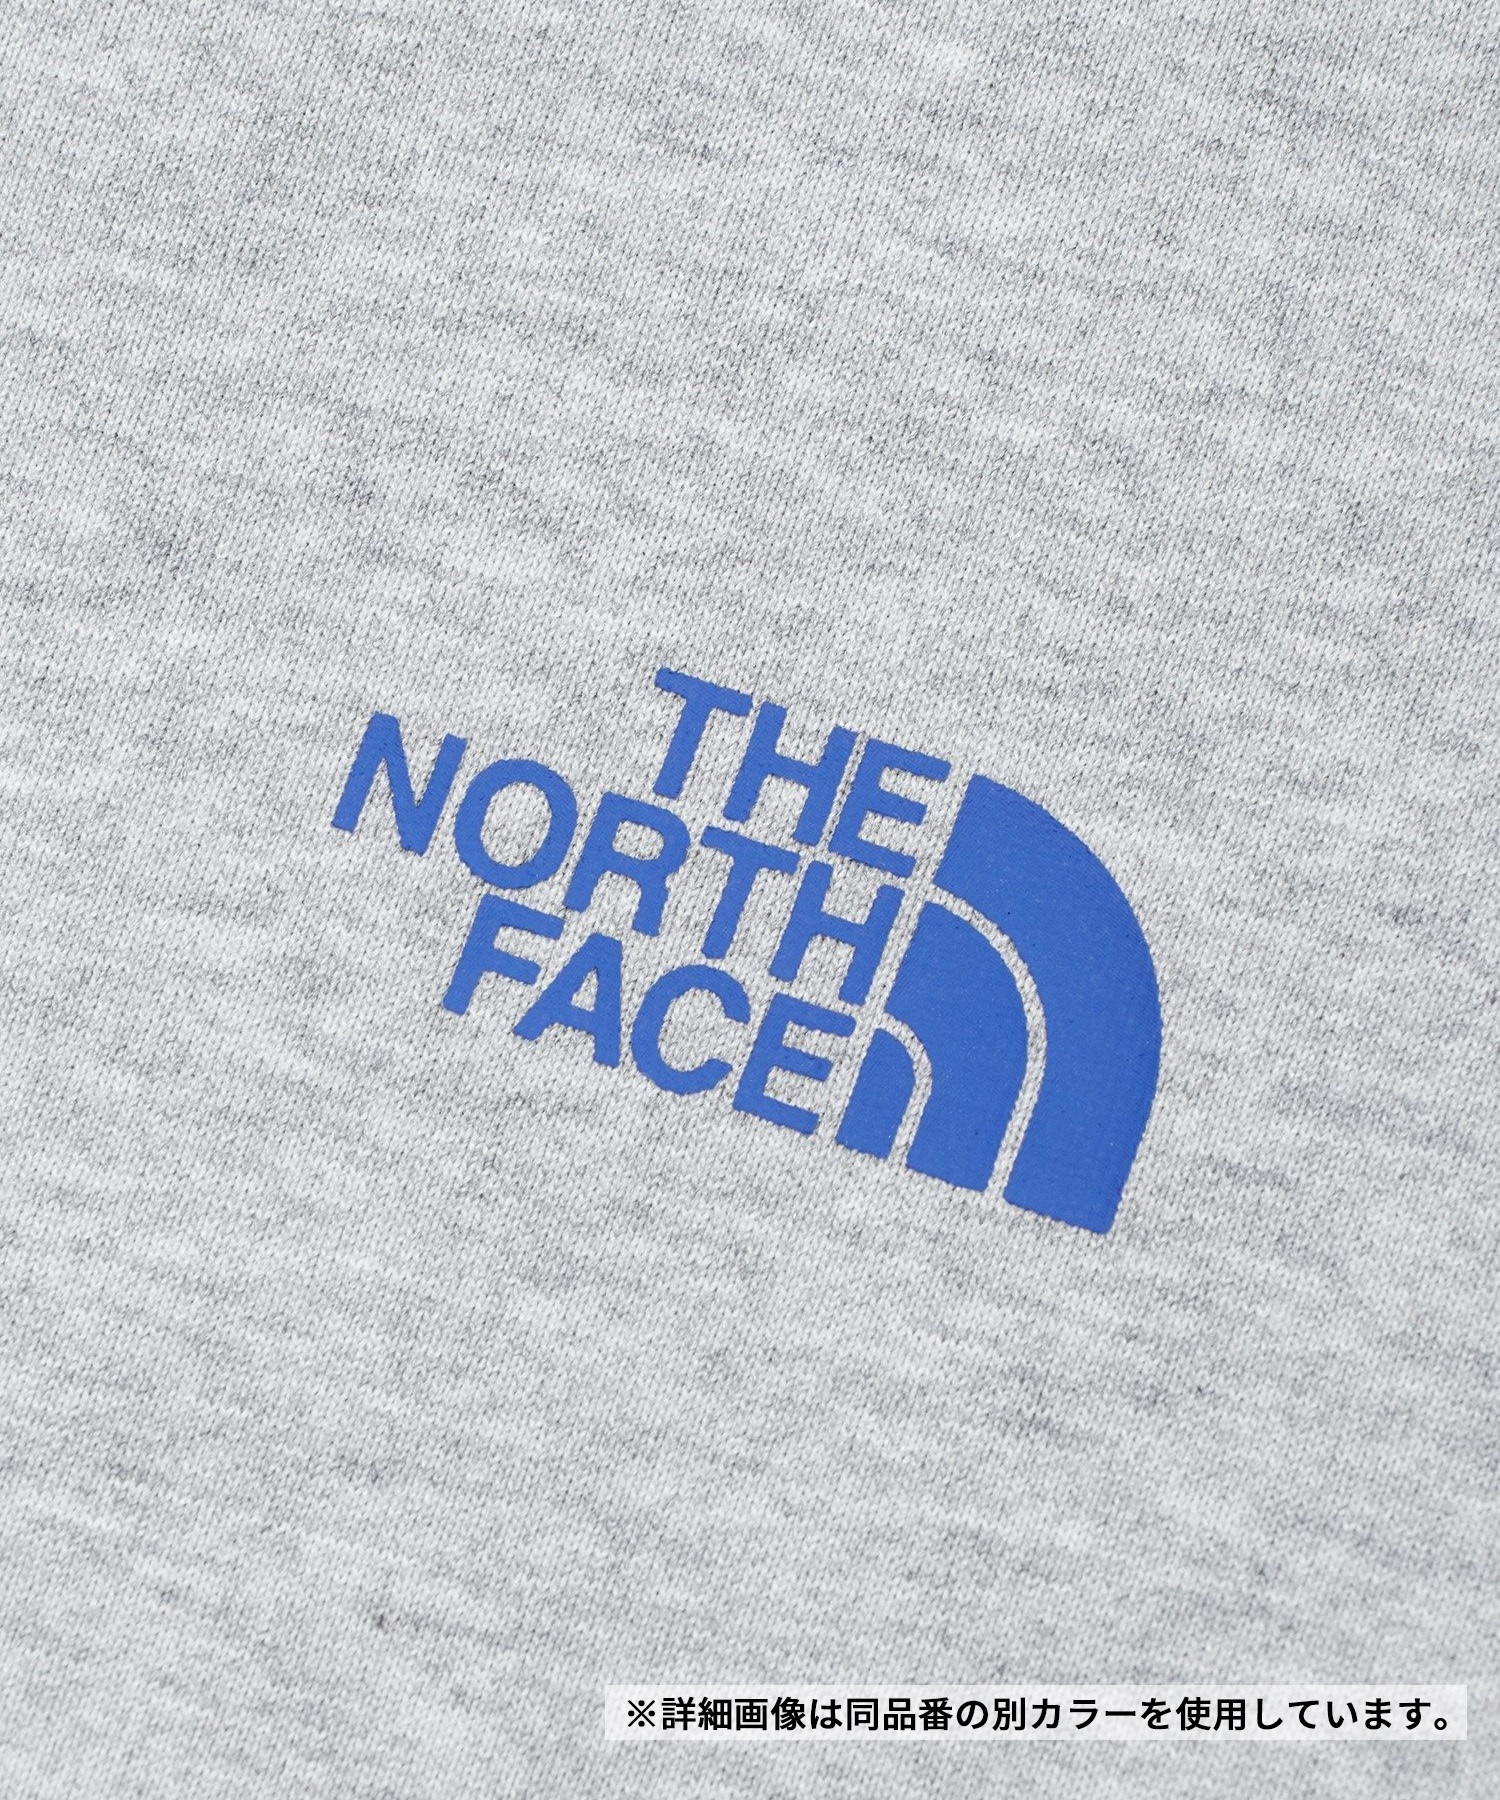 THE NORTH FACE ザ・ノース・フェイス メンズ Tシャツ 半袖 ショートスリーブハーフスウィッチングロゴティー NT32458 K(K-M)